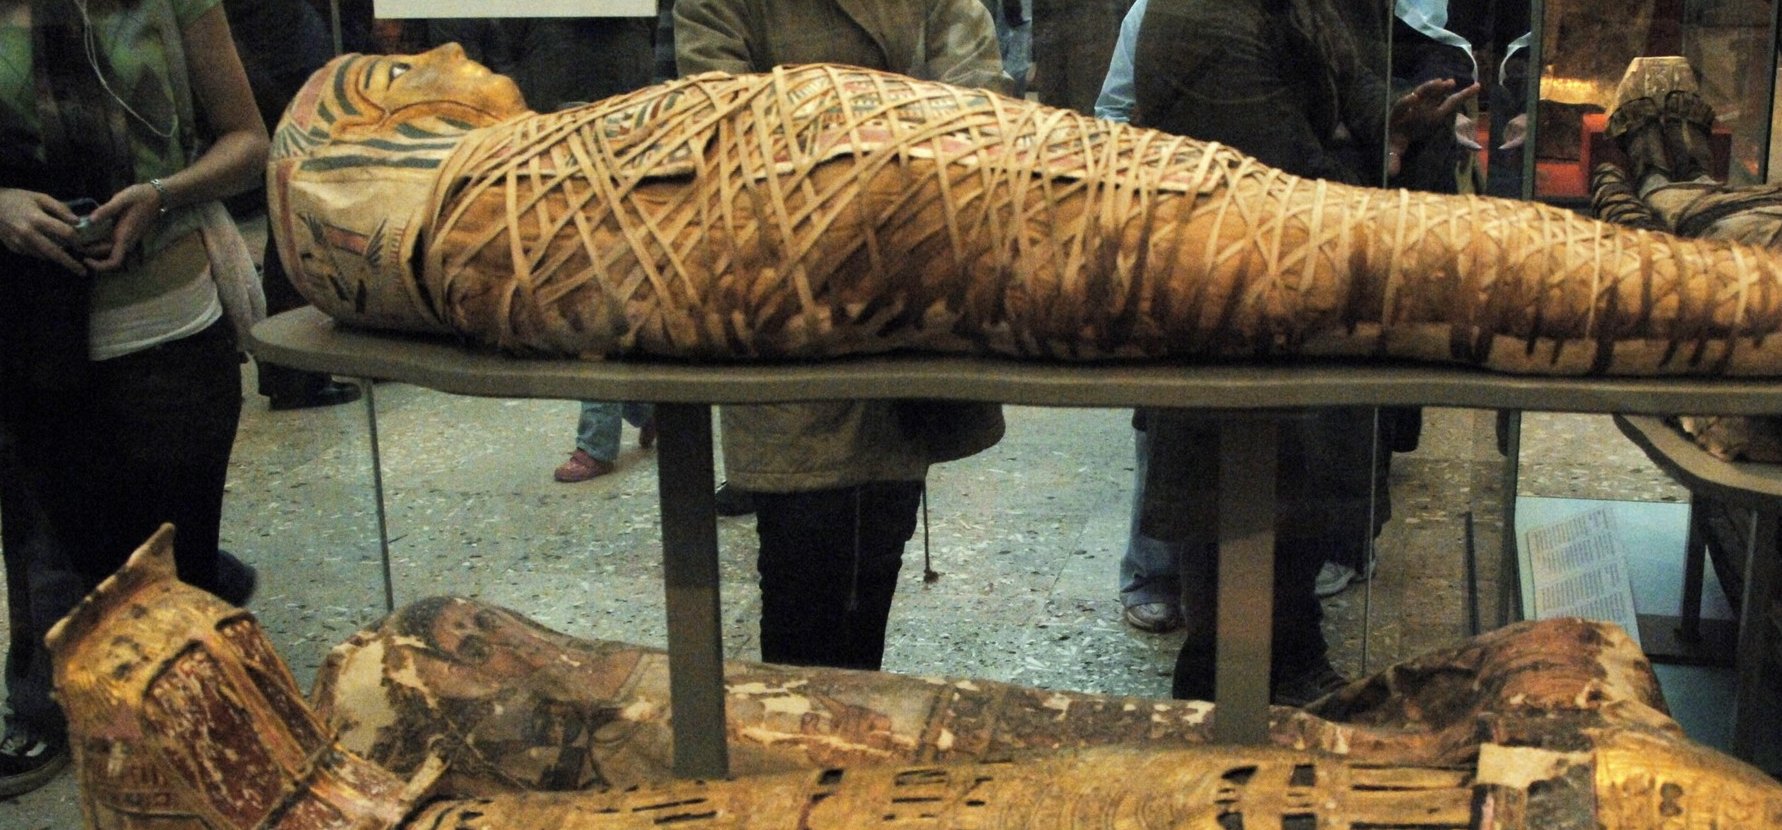 Röntgennel vizsgáltak meg egy múmiát, és szenzációs felfedezést tettek, egy dolog szinte romlatlan maradt rajta